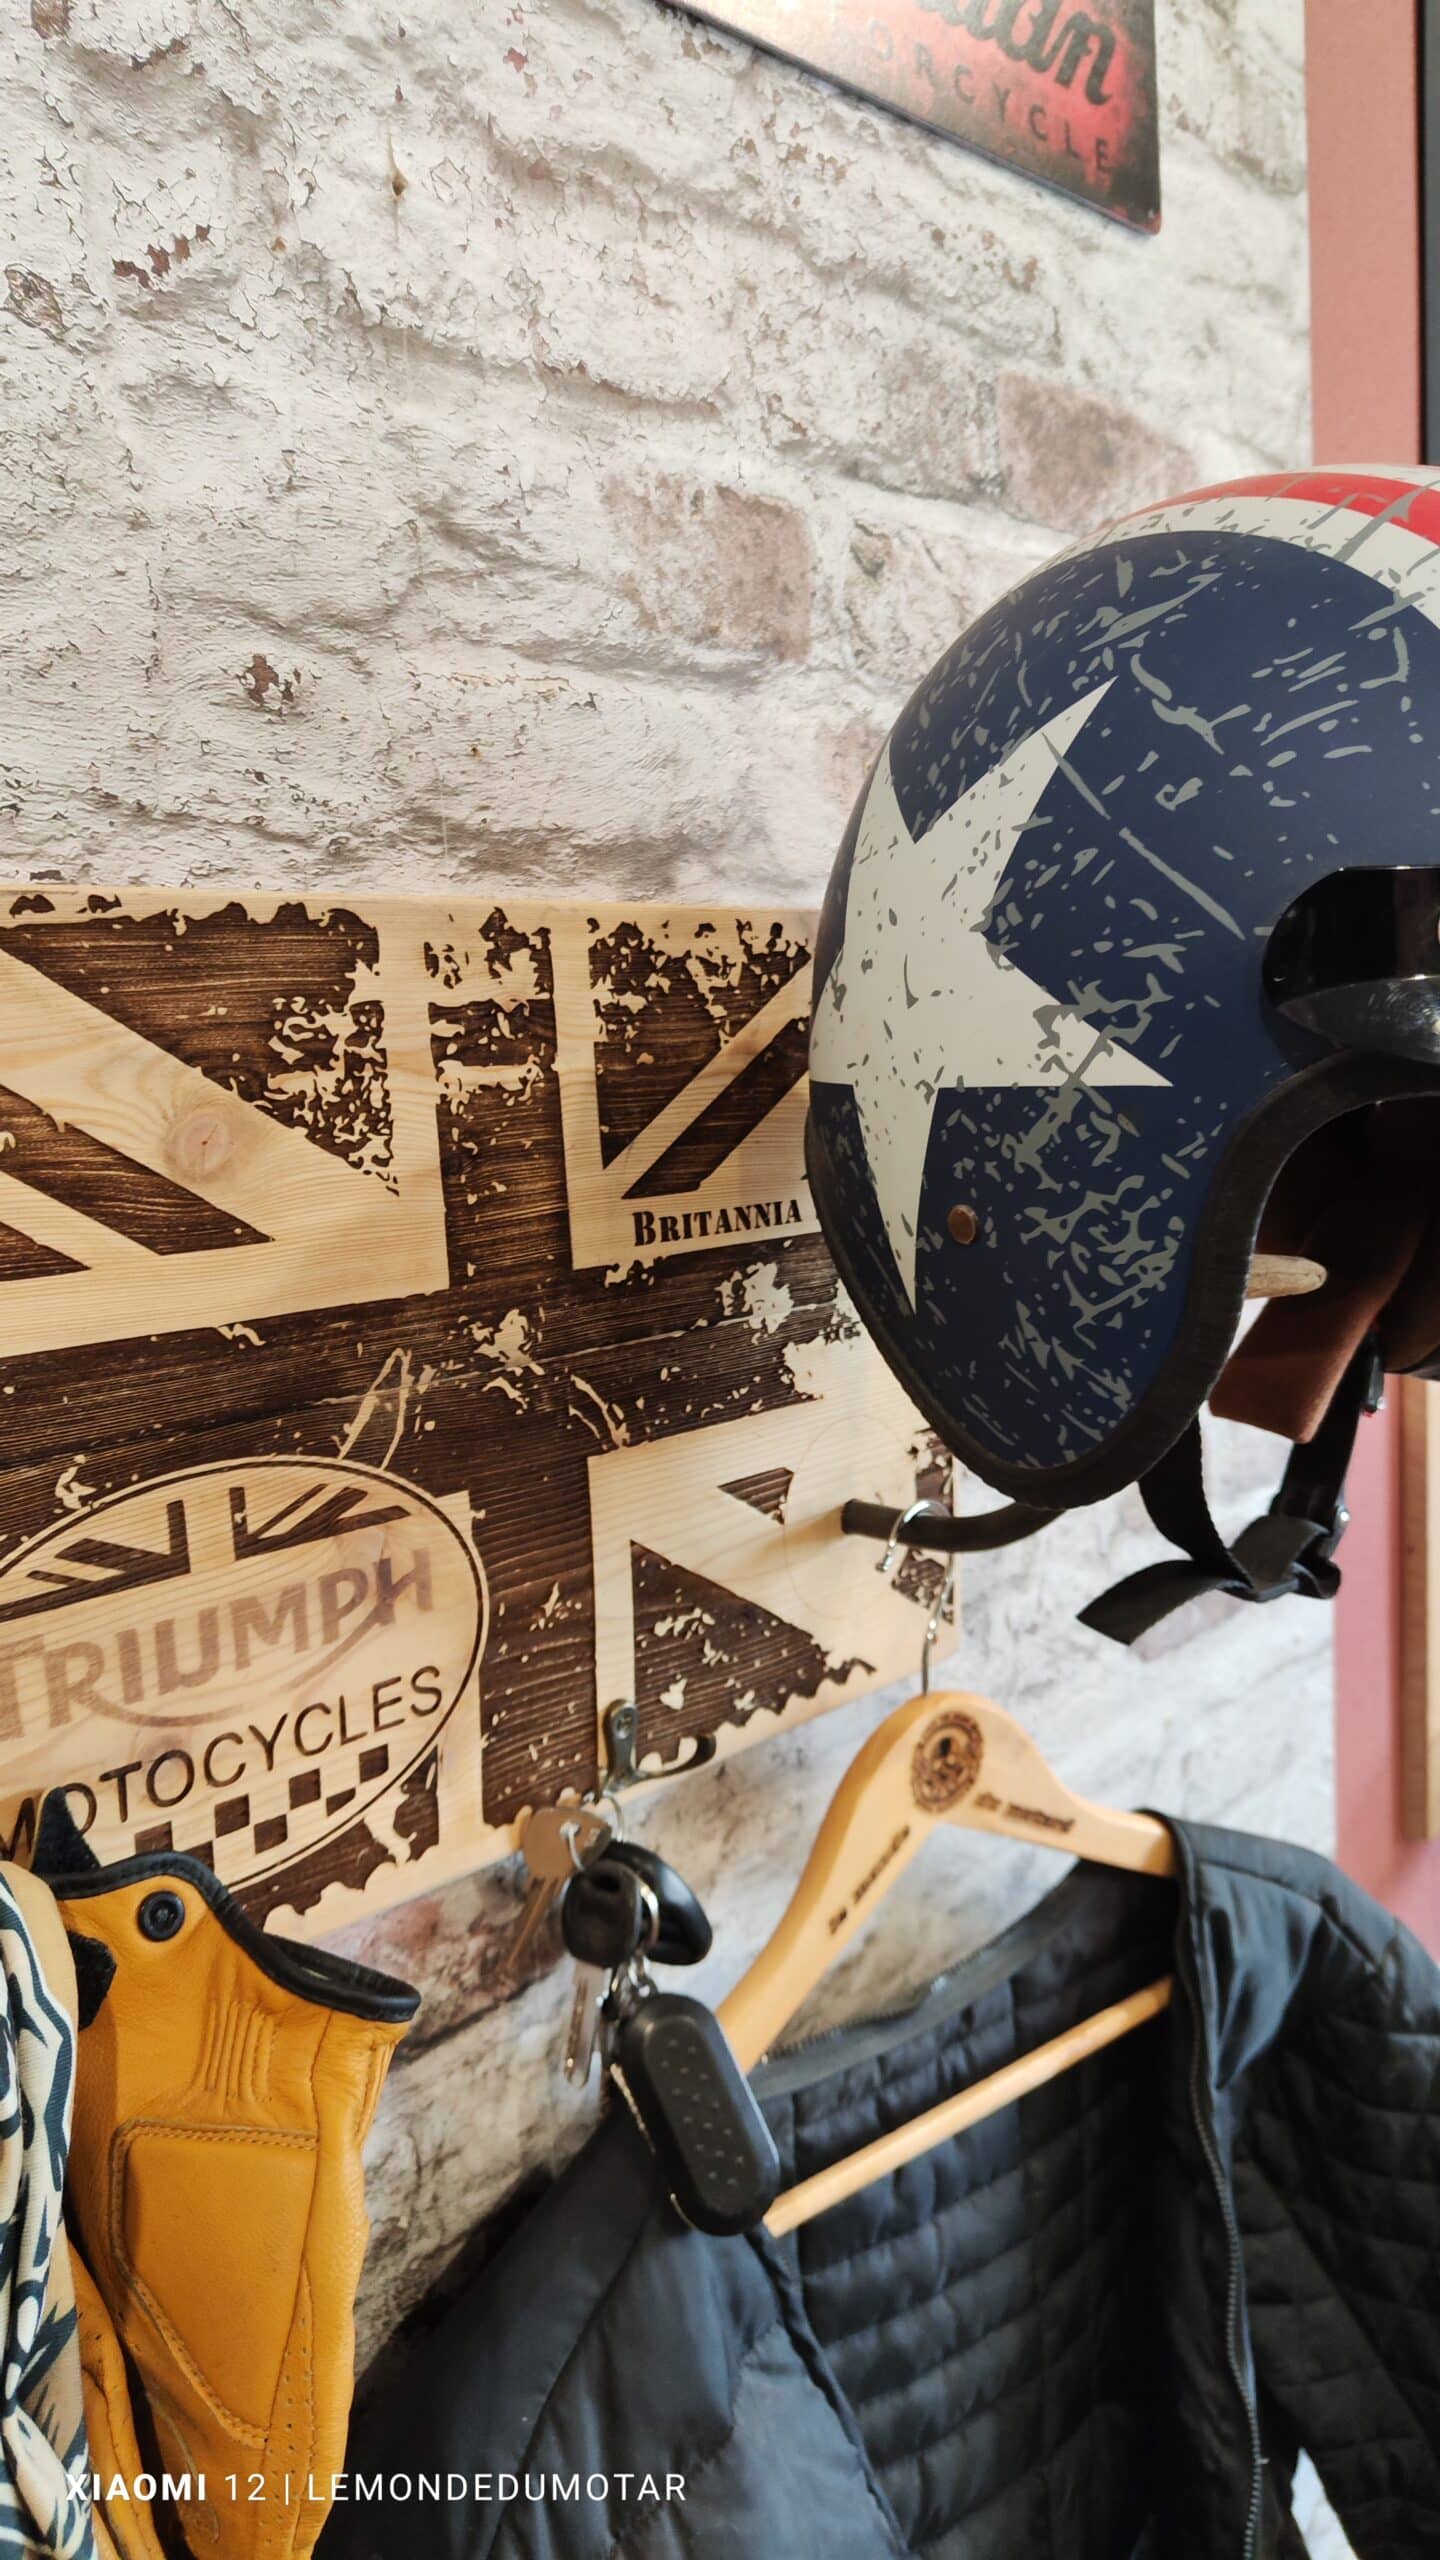 Support casque moto mural en livraison gratuite